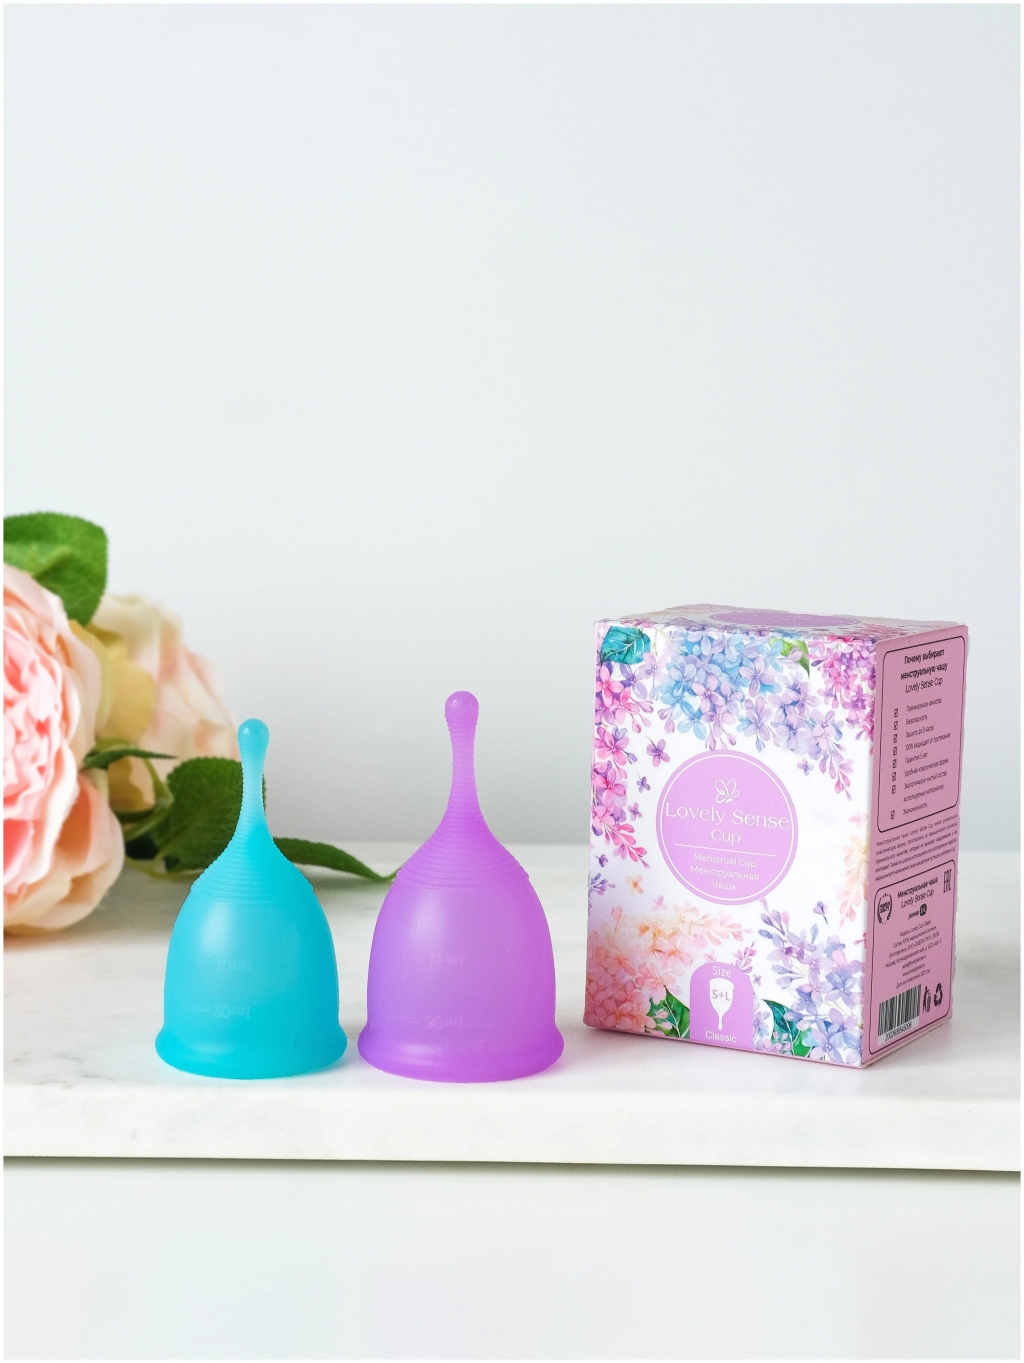 Менструальные чаши Lovely Sense CLASSIC - Как я рада, что открыла эти чаши для себя!